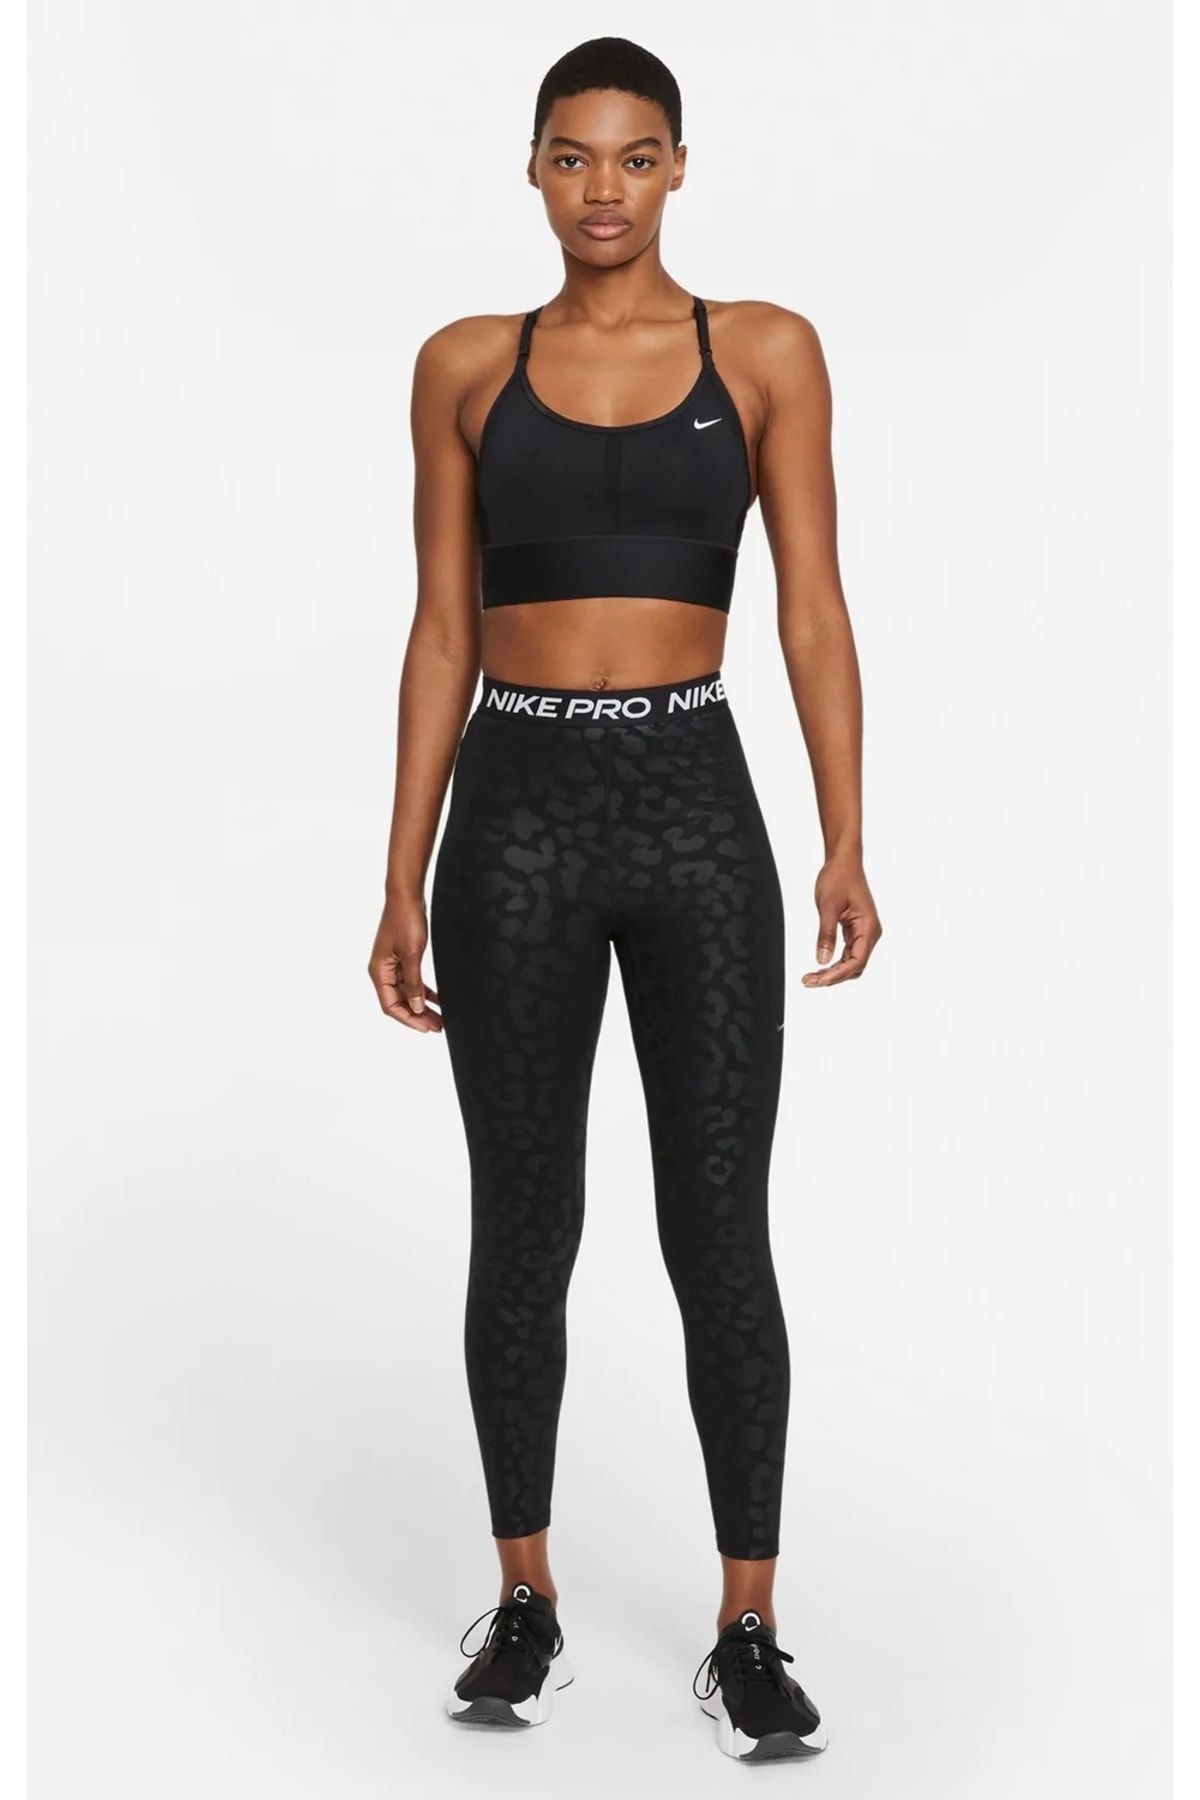 Nike Ny Dri-fit Hıgh Rıse Yoga 7/8 Tıght Kadın Tayt Dm7023-010 Fiyatı,  Yorumları - Trendyol